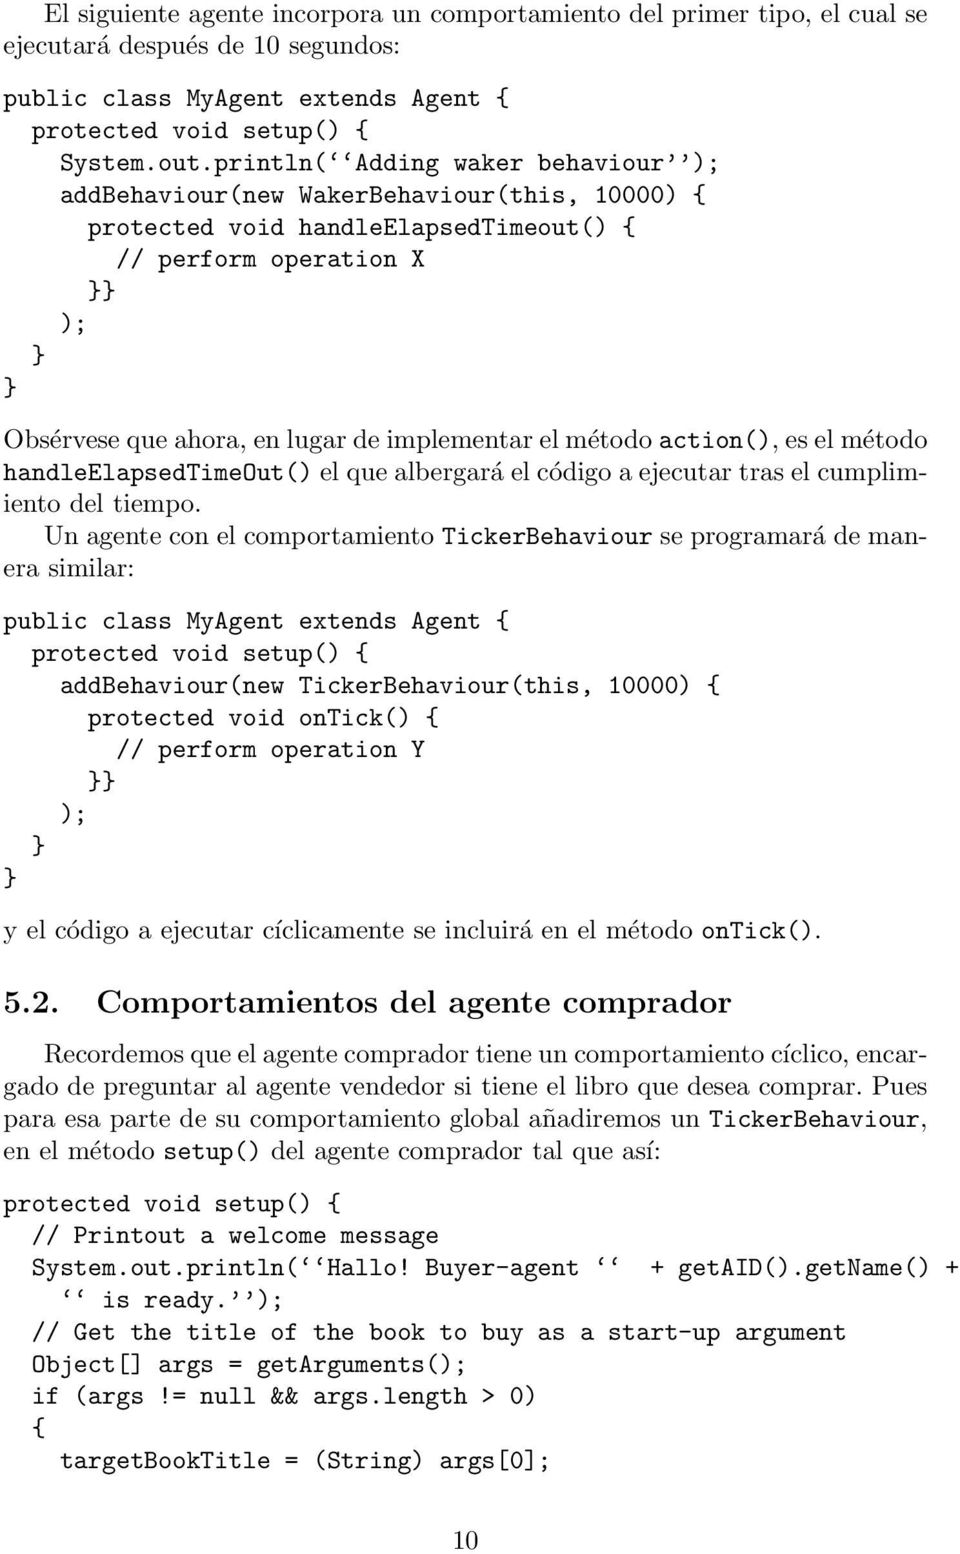 método action(), es el método handleelapsedtimeout() el que albergará el código a ejecutar tras el cumplimiento del tiempo.